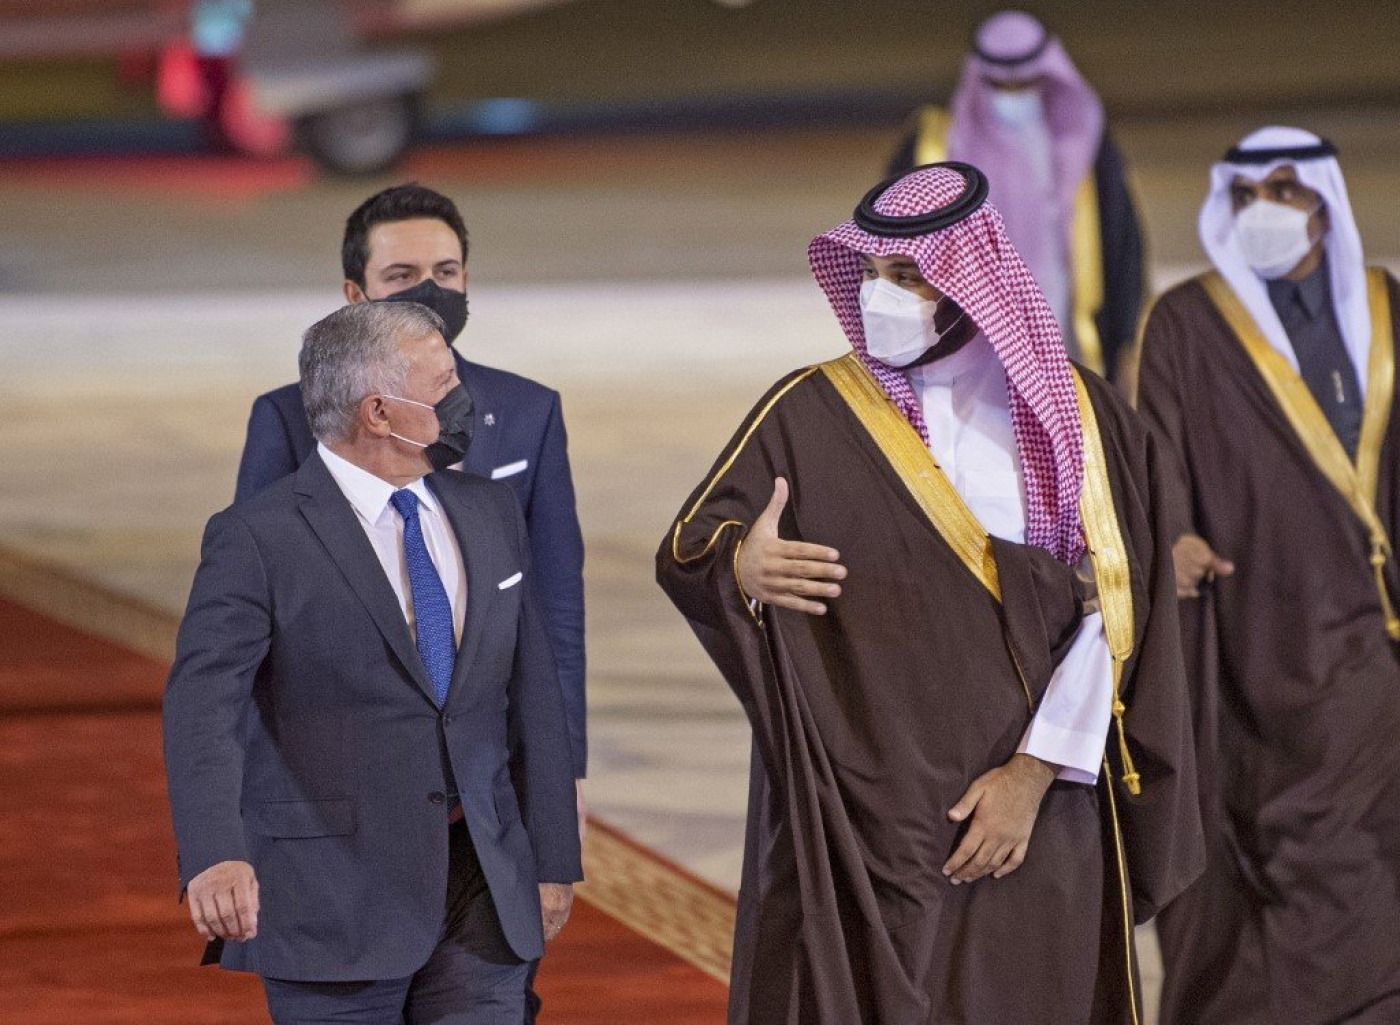 King Abdullah of Jordan with Saudi Arabian Crown Prince Mohammad bin Salman